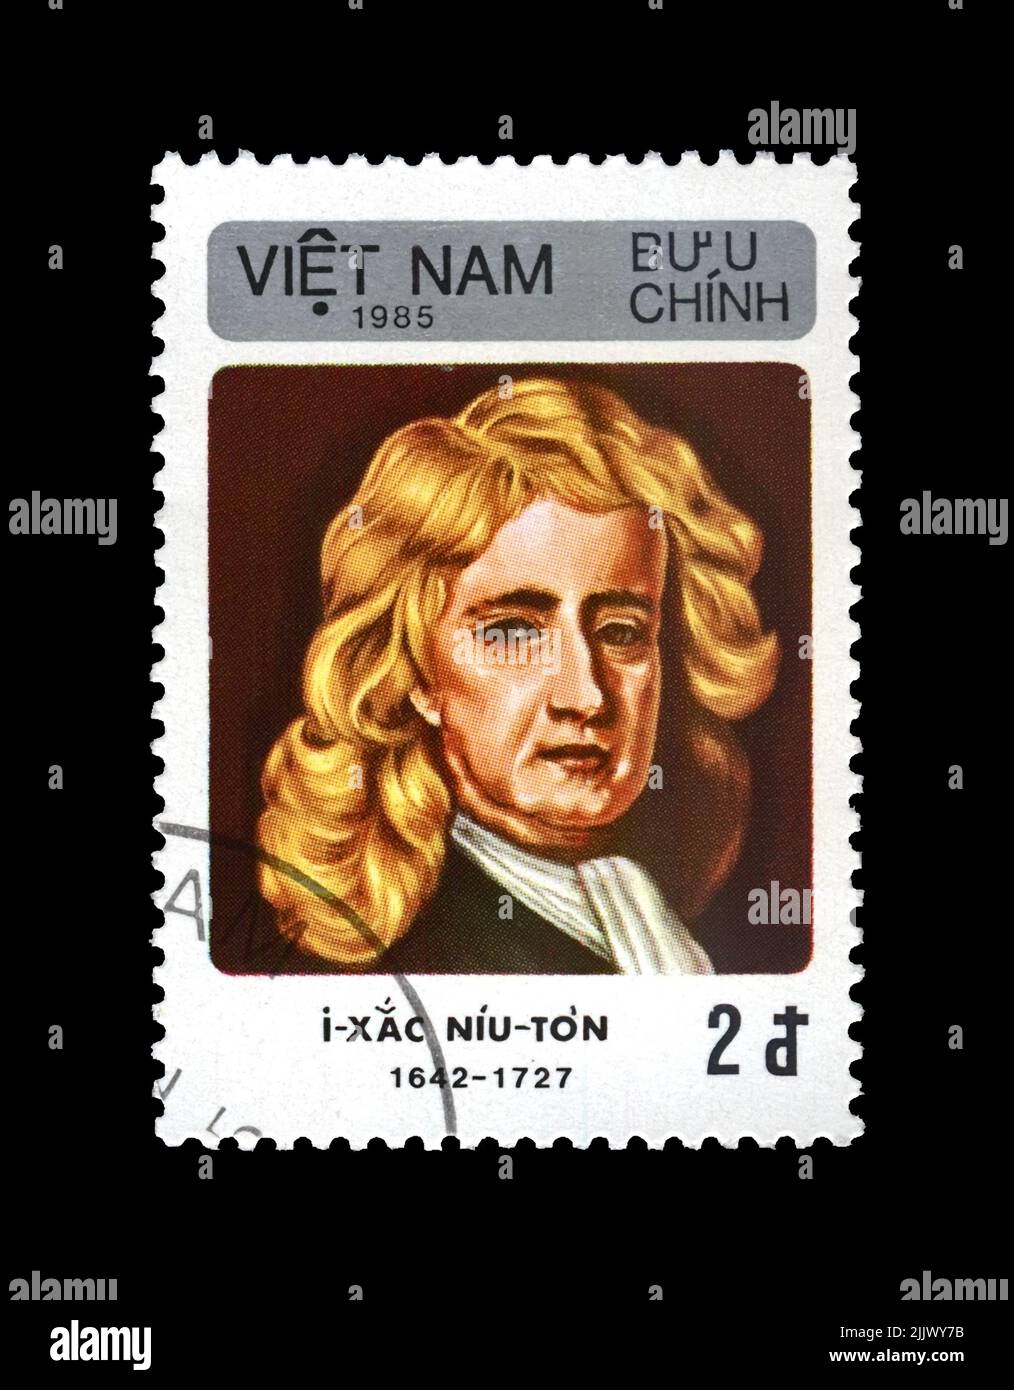 Isaac Newton (1642-1727), famoso scienziato, esploratore, matematico, astronomo, Osservatore, circa 1985. Timbro postale vintage di Viet Nam isolato Foto Stock